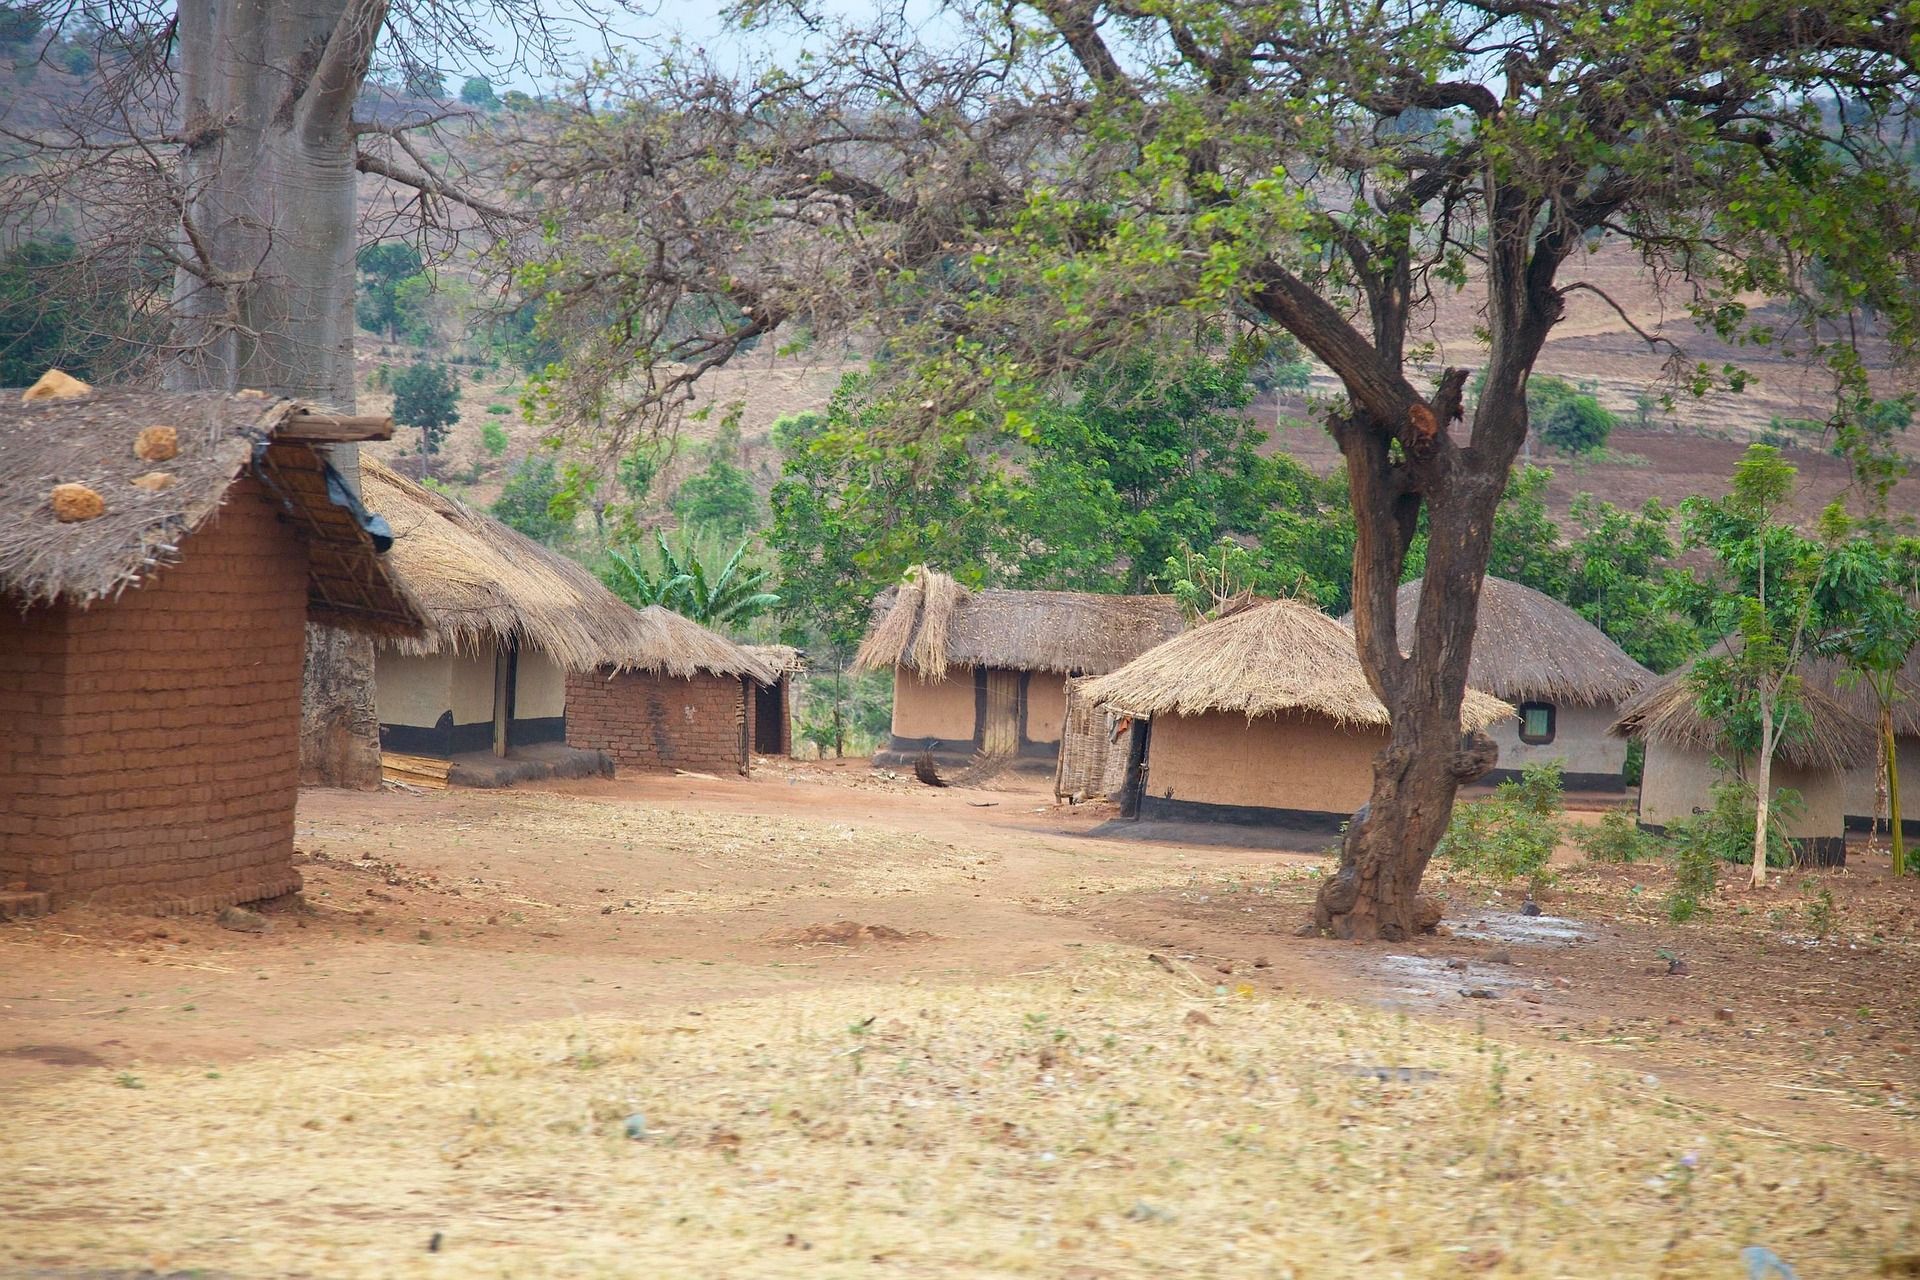 Hütten aus Malawi